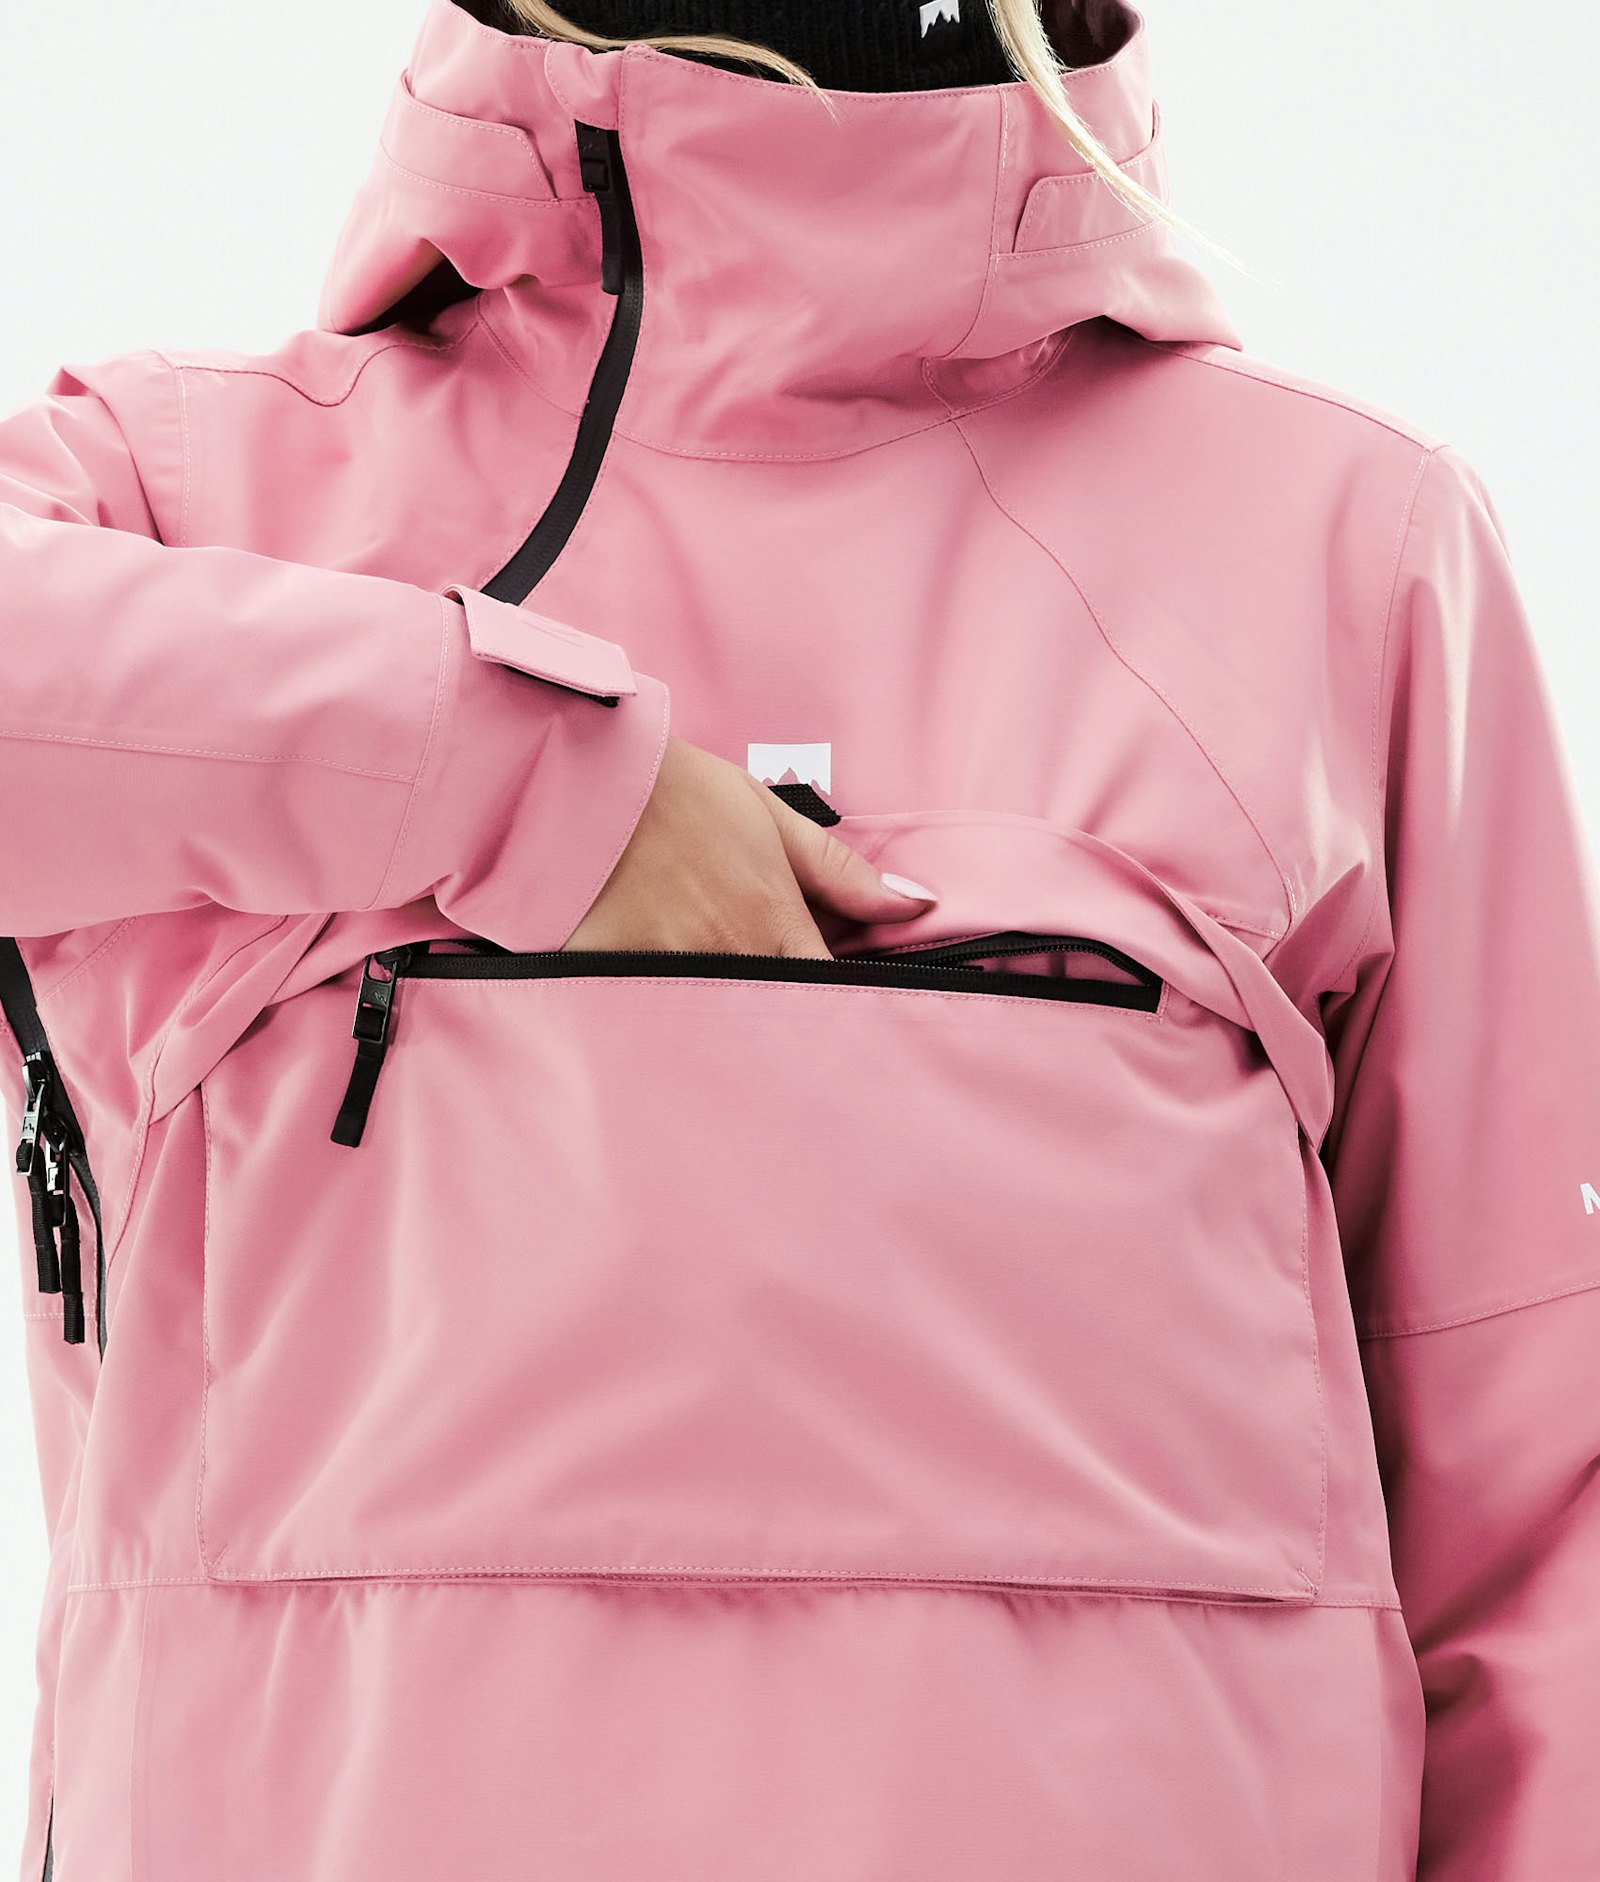 Montec Dune W 2021 Snowboard Jacket Women Pink